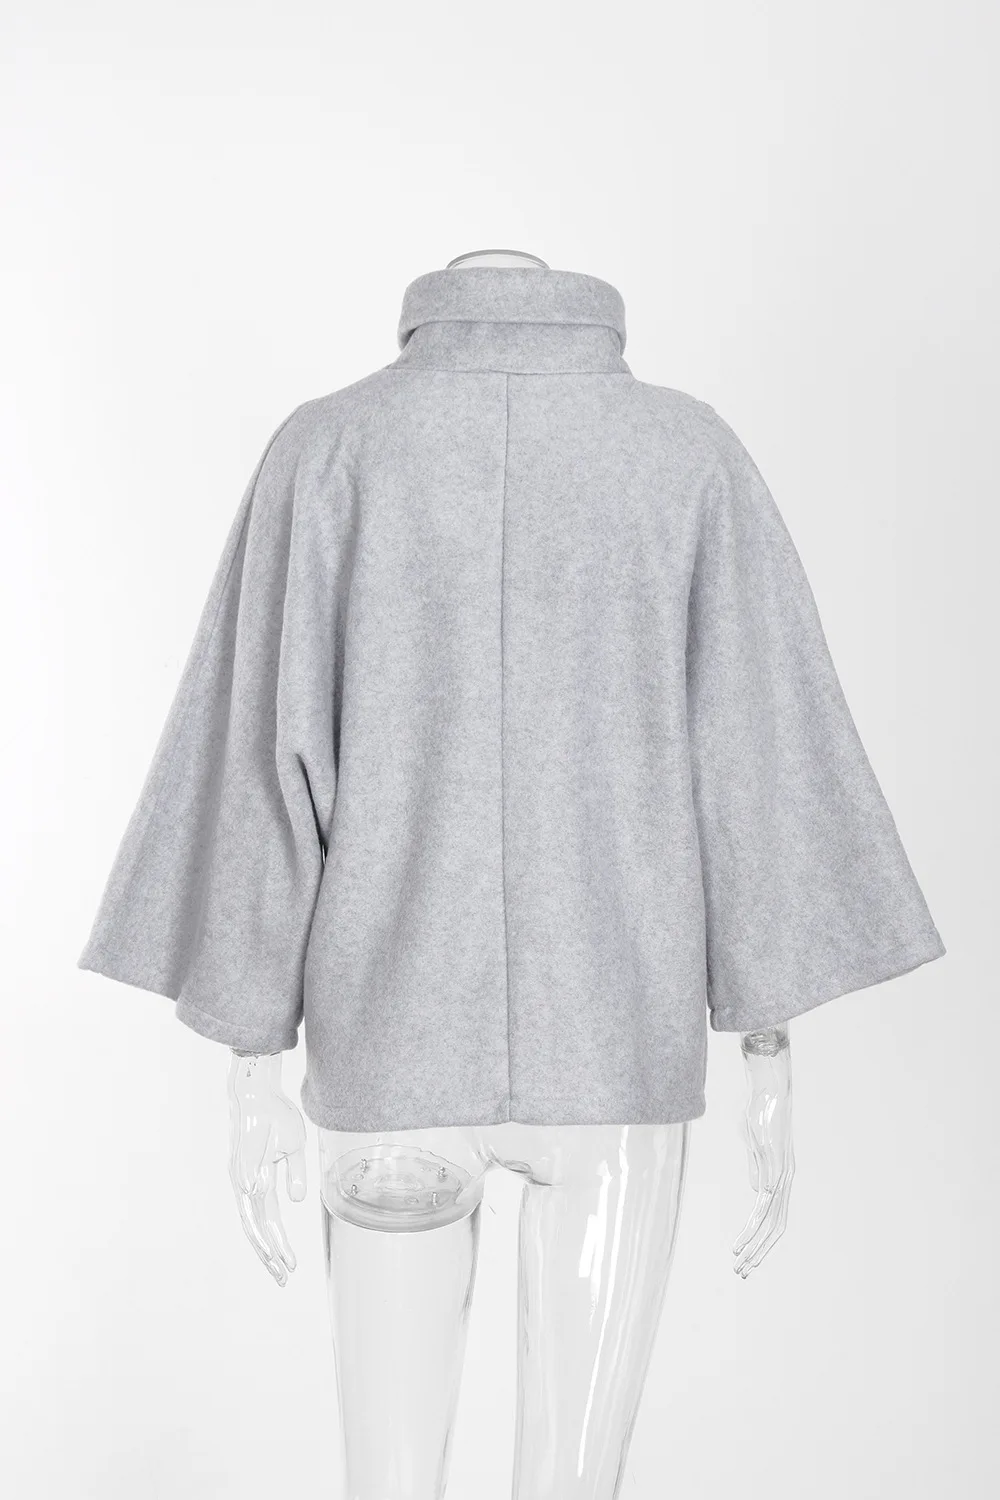 XUANSHOW модное зимнее пальто с мехом для женщин нерегулярная флисовая куртка водолазка воротник толстовки сохраняющая тепло одежда толстовкаa